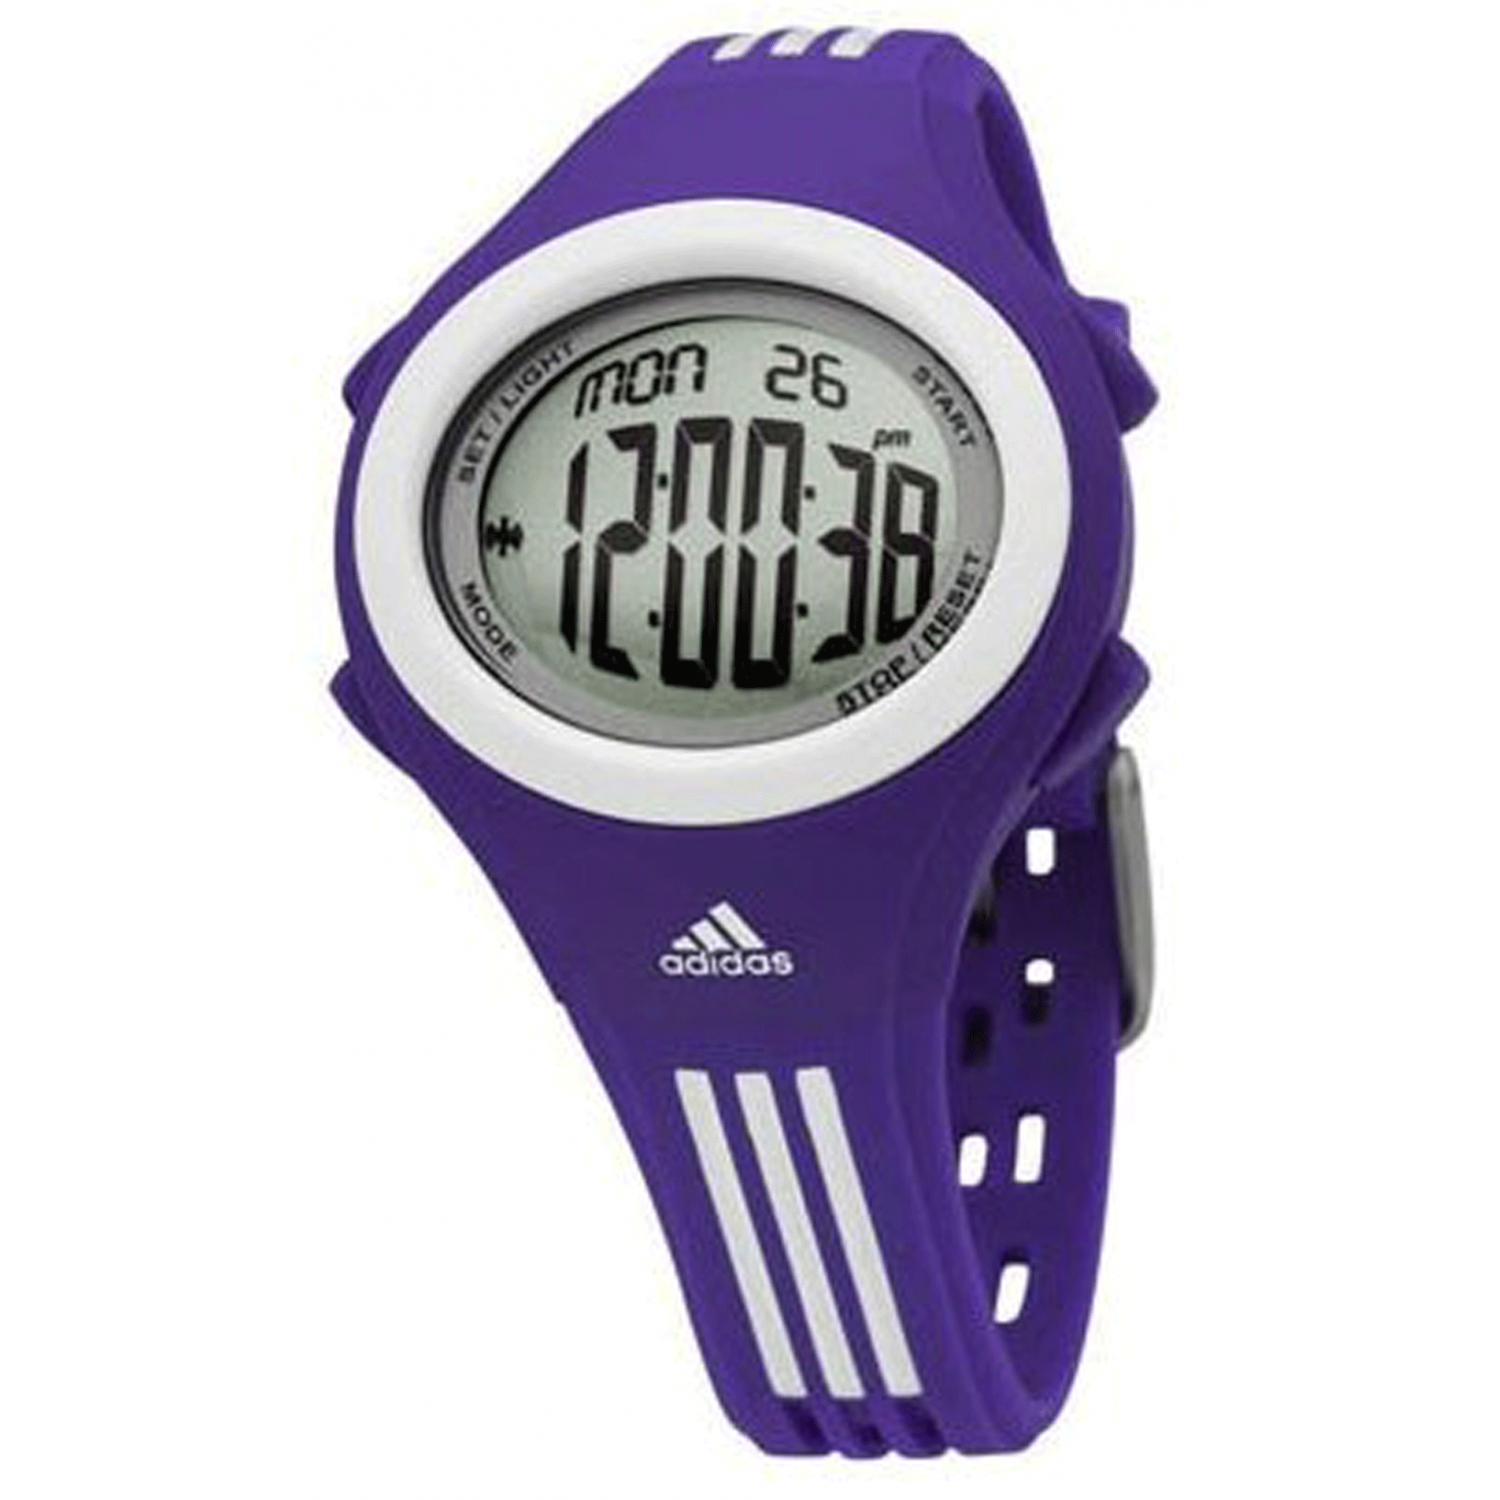 Адидас с часами. Спортивные часы адидас. Часы адидас электронные спортивные. Наручные часы adidas adh2520. Часы адидас мужские.